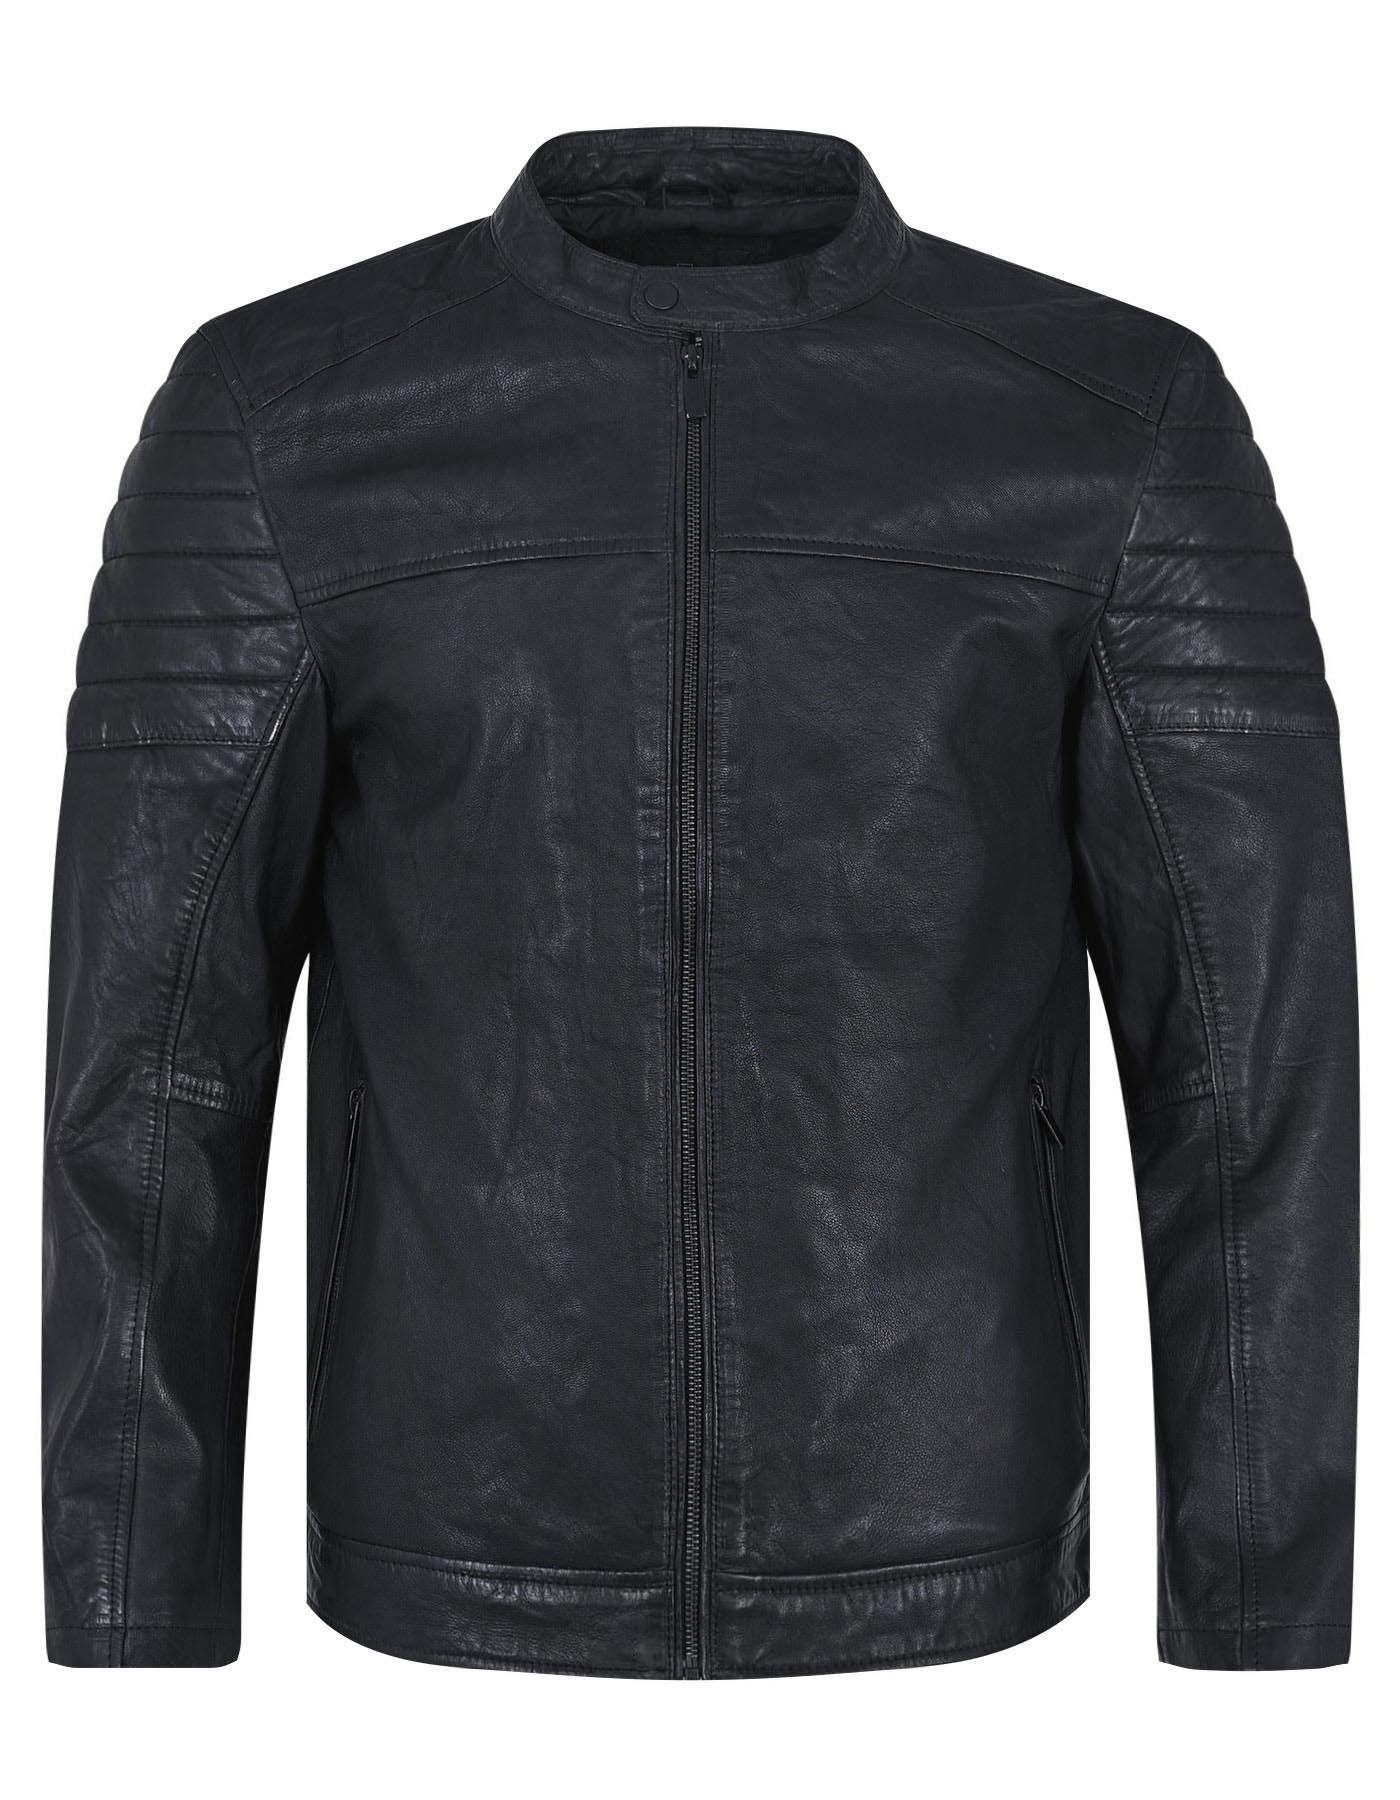 Furioc Black Plain Leather Biker Jacket